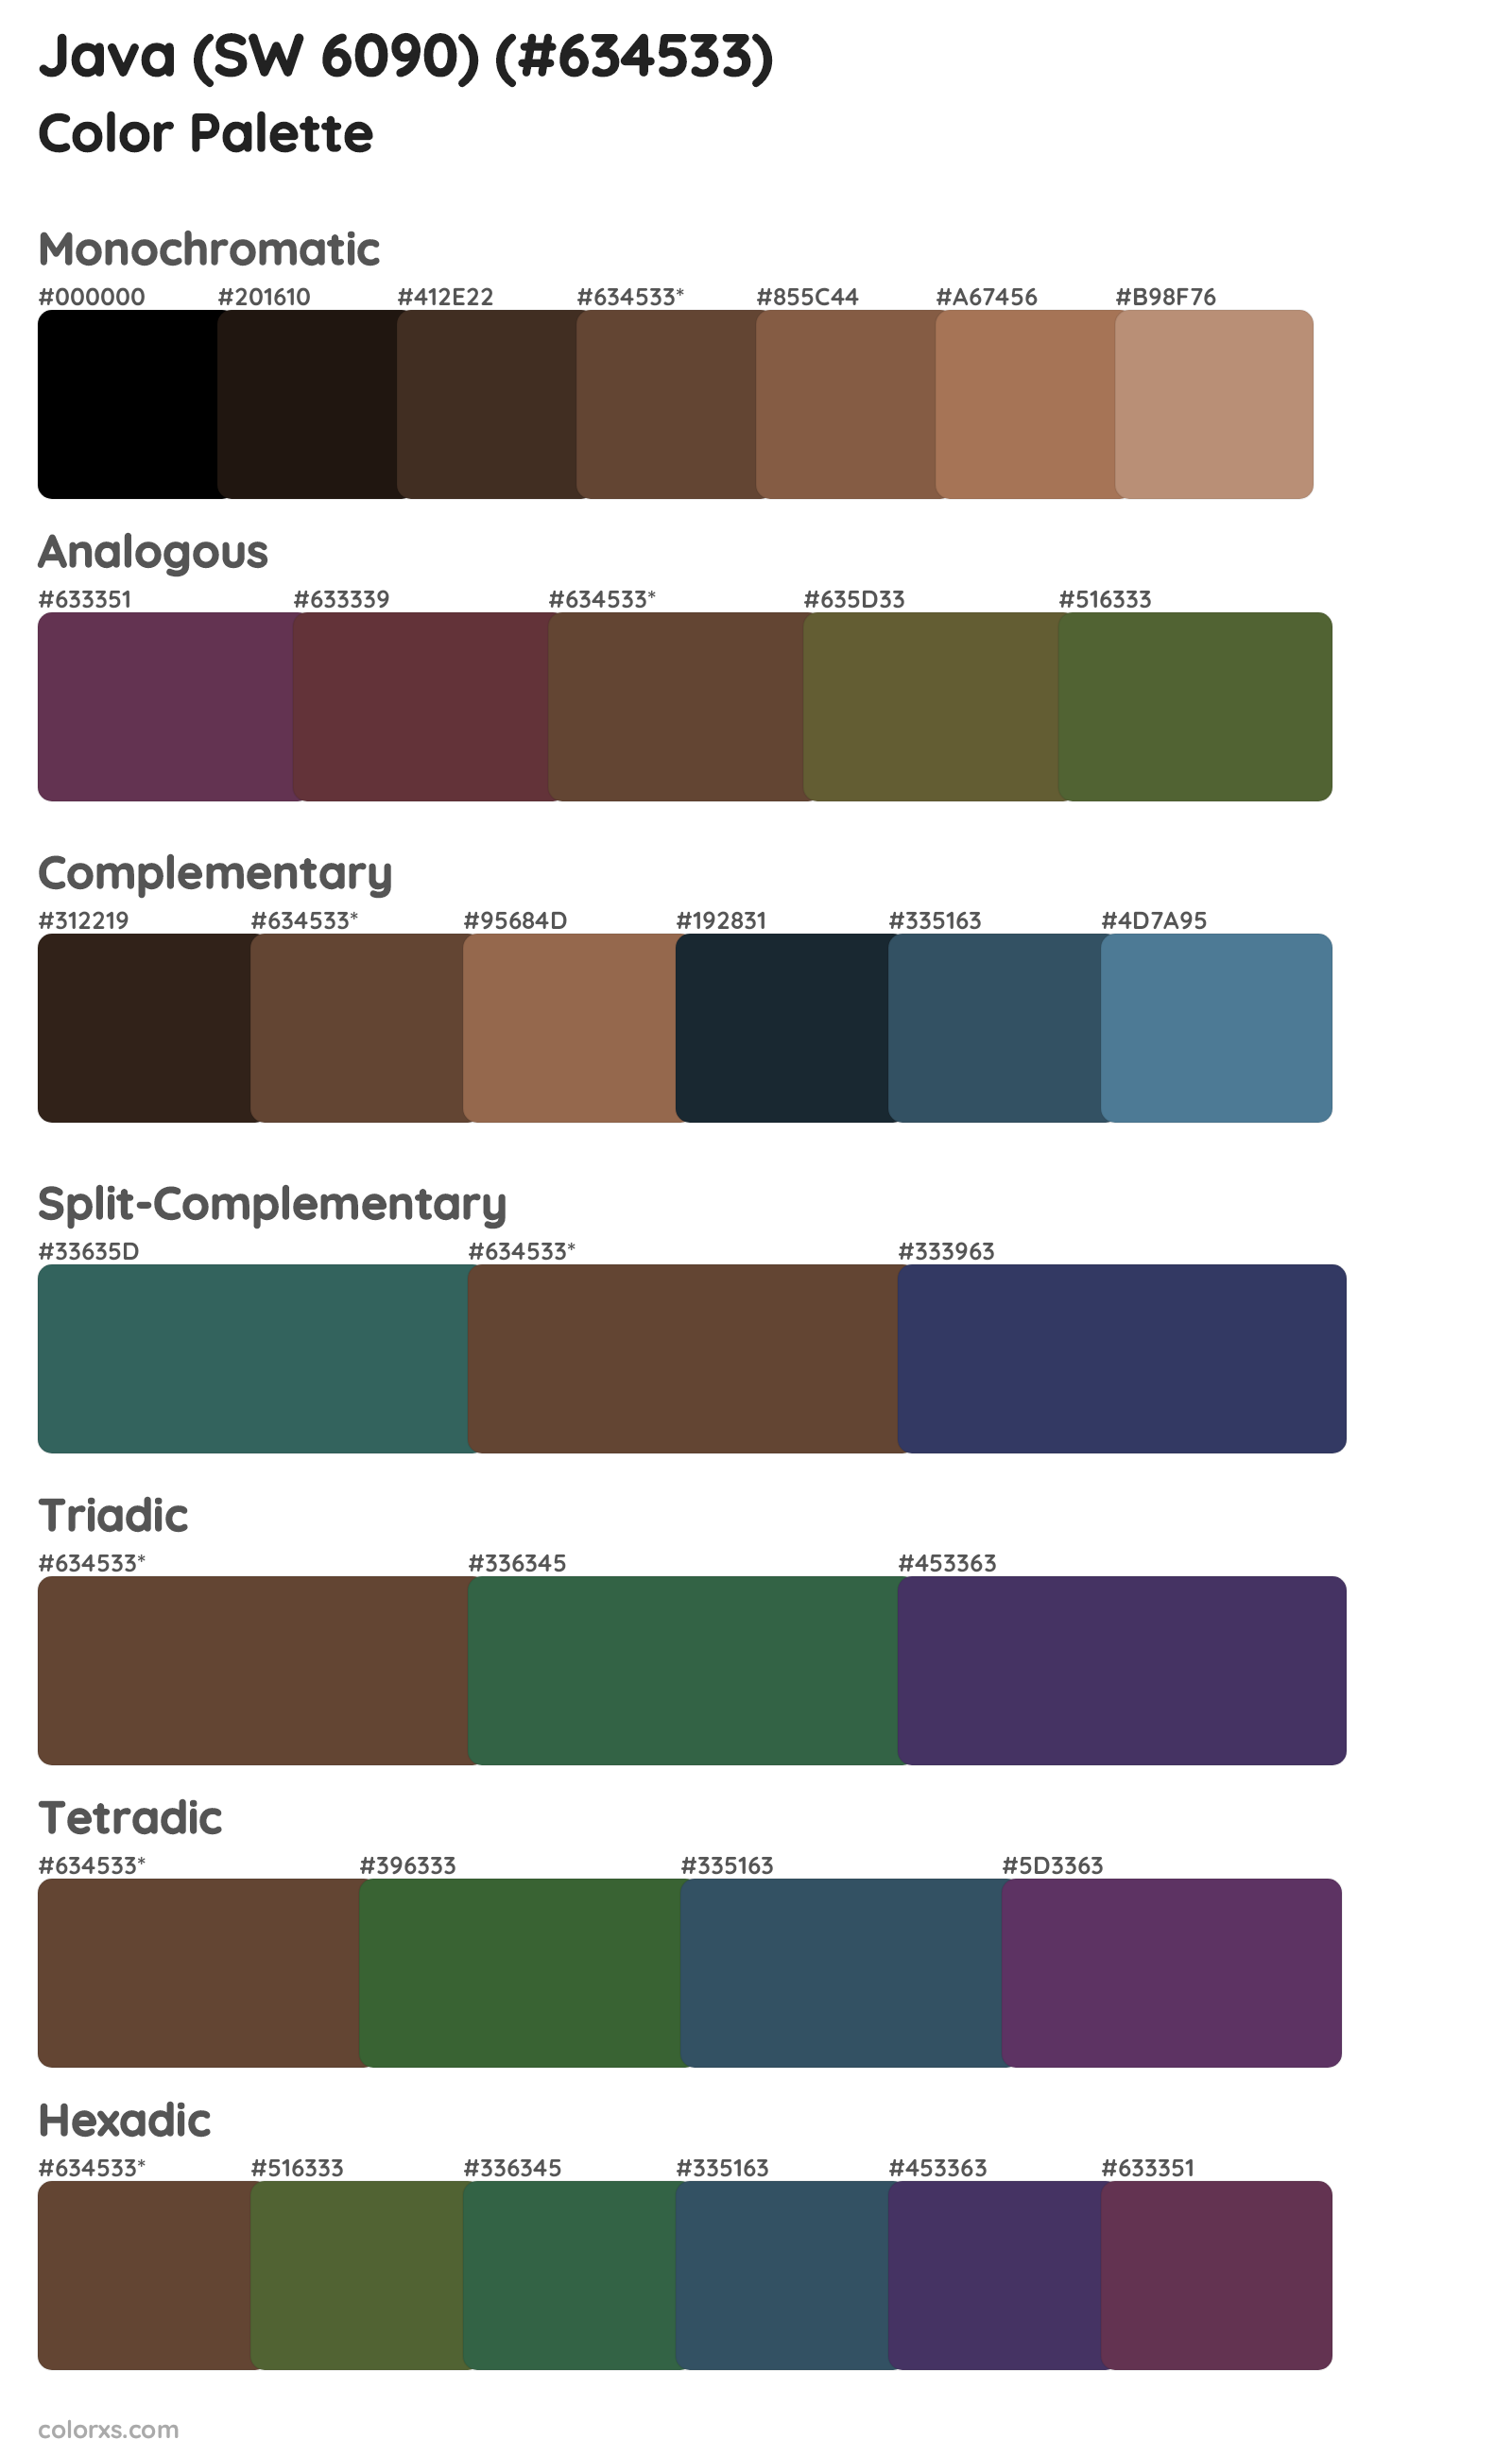 Java (SW 6090) Color Scheme Palettes